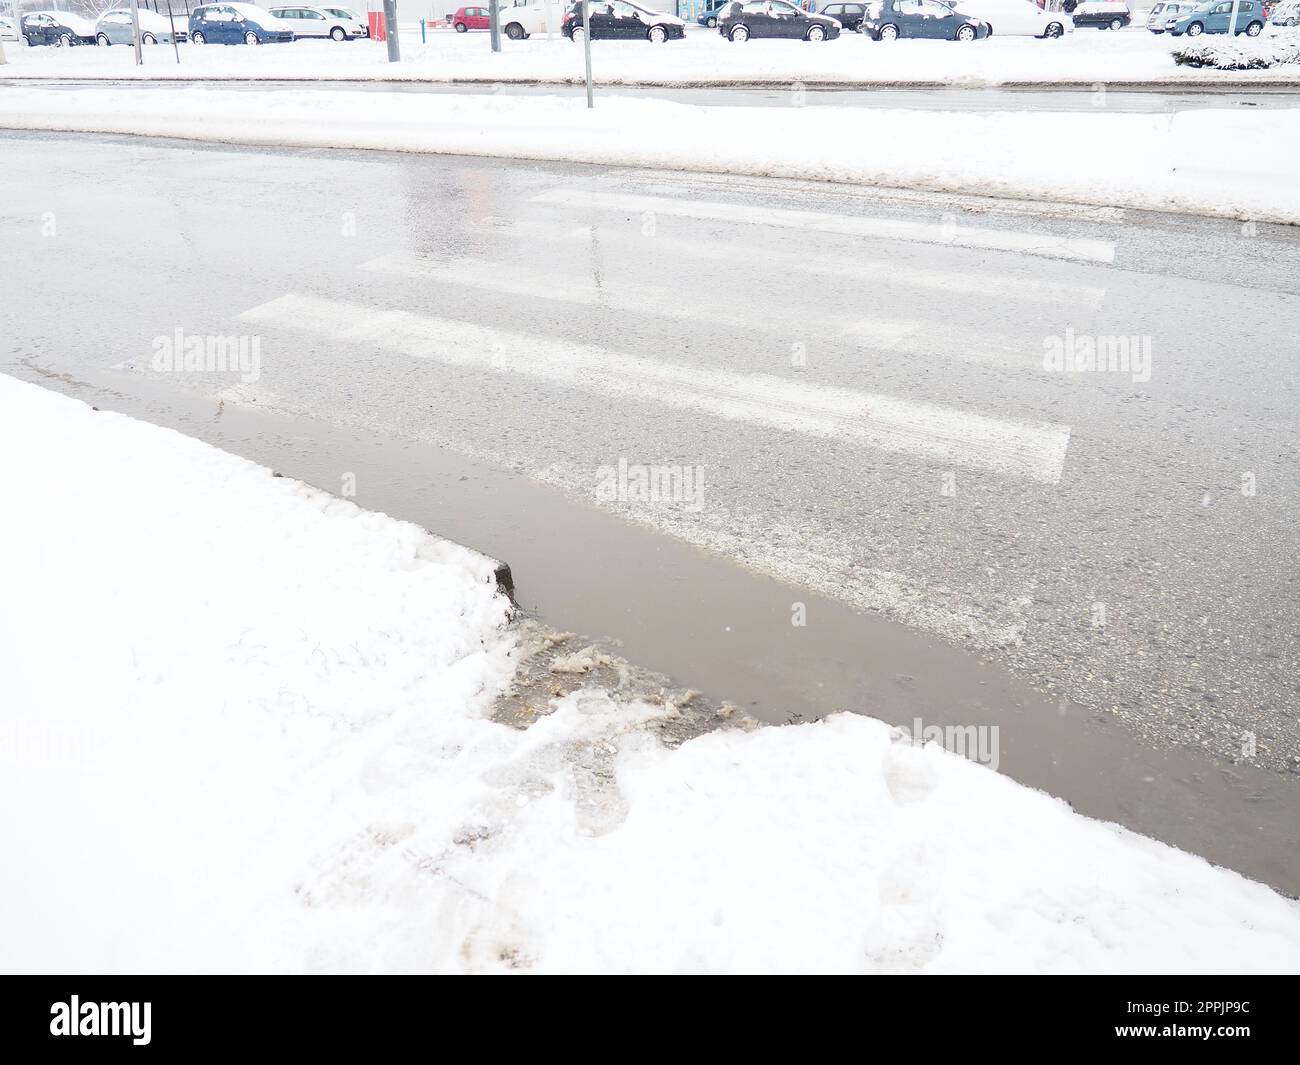 Schnee, Eis, Matsch und Winterschlamm an einer Fußgängerüberquerung. Die Lufttemperatur beträgt etwa 0 °C. Schwierige Fahrbedingungen. Bremsweg des Fahrzeugs. Verkehrsgesetze. Infrastruktur und Straßendienste Stockfoto